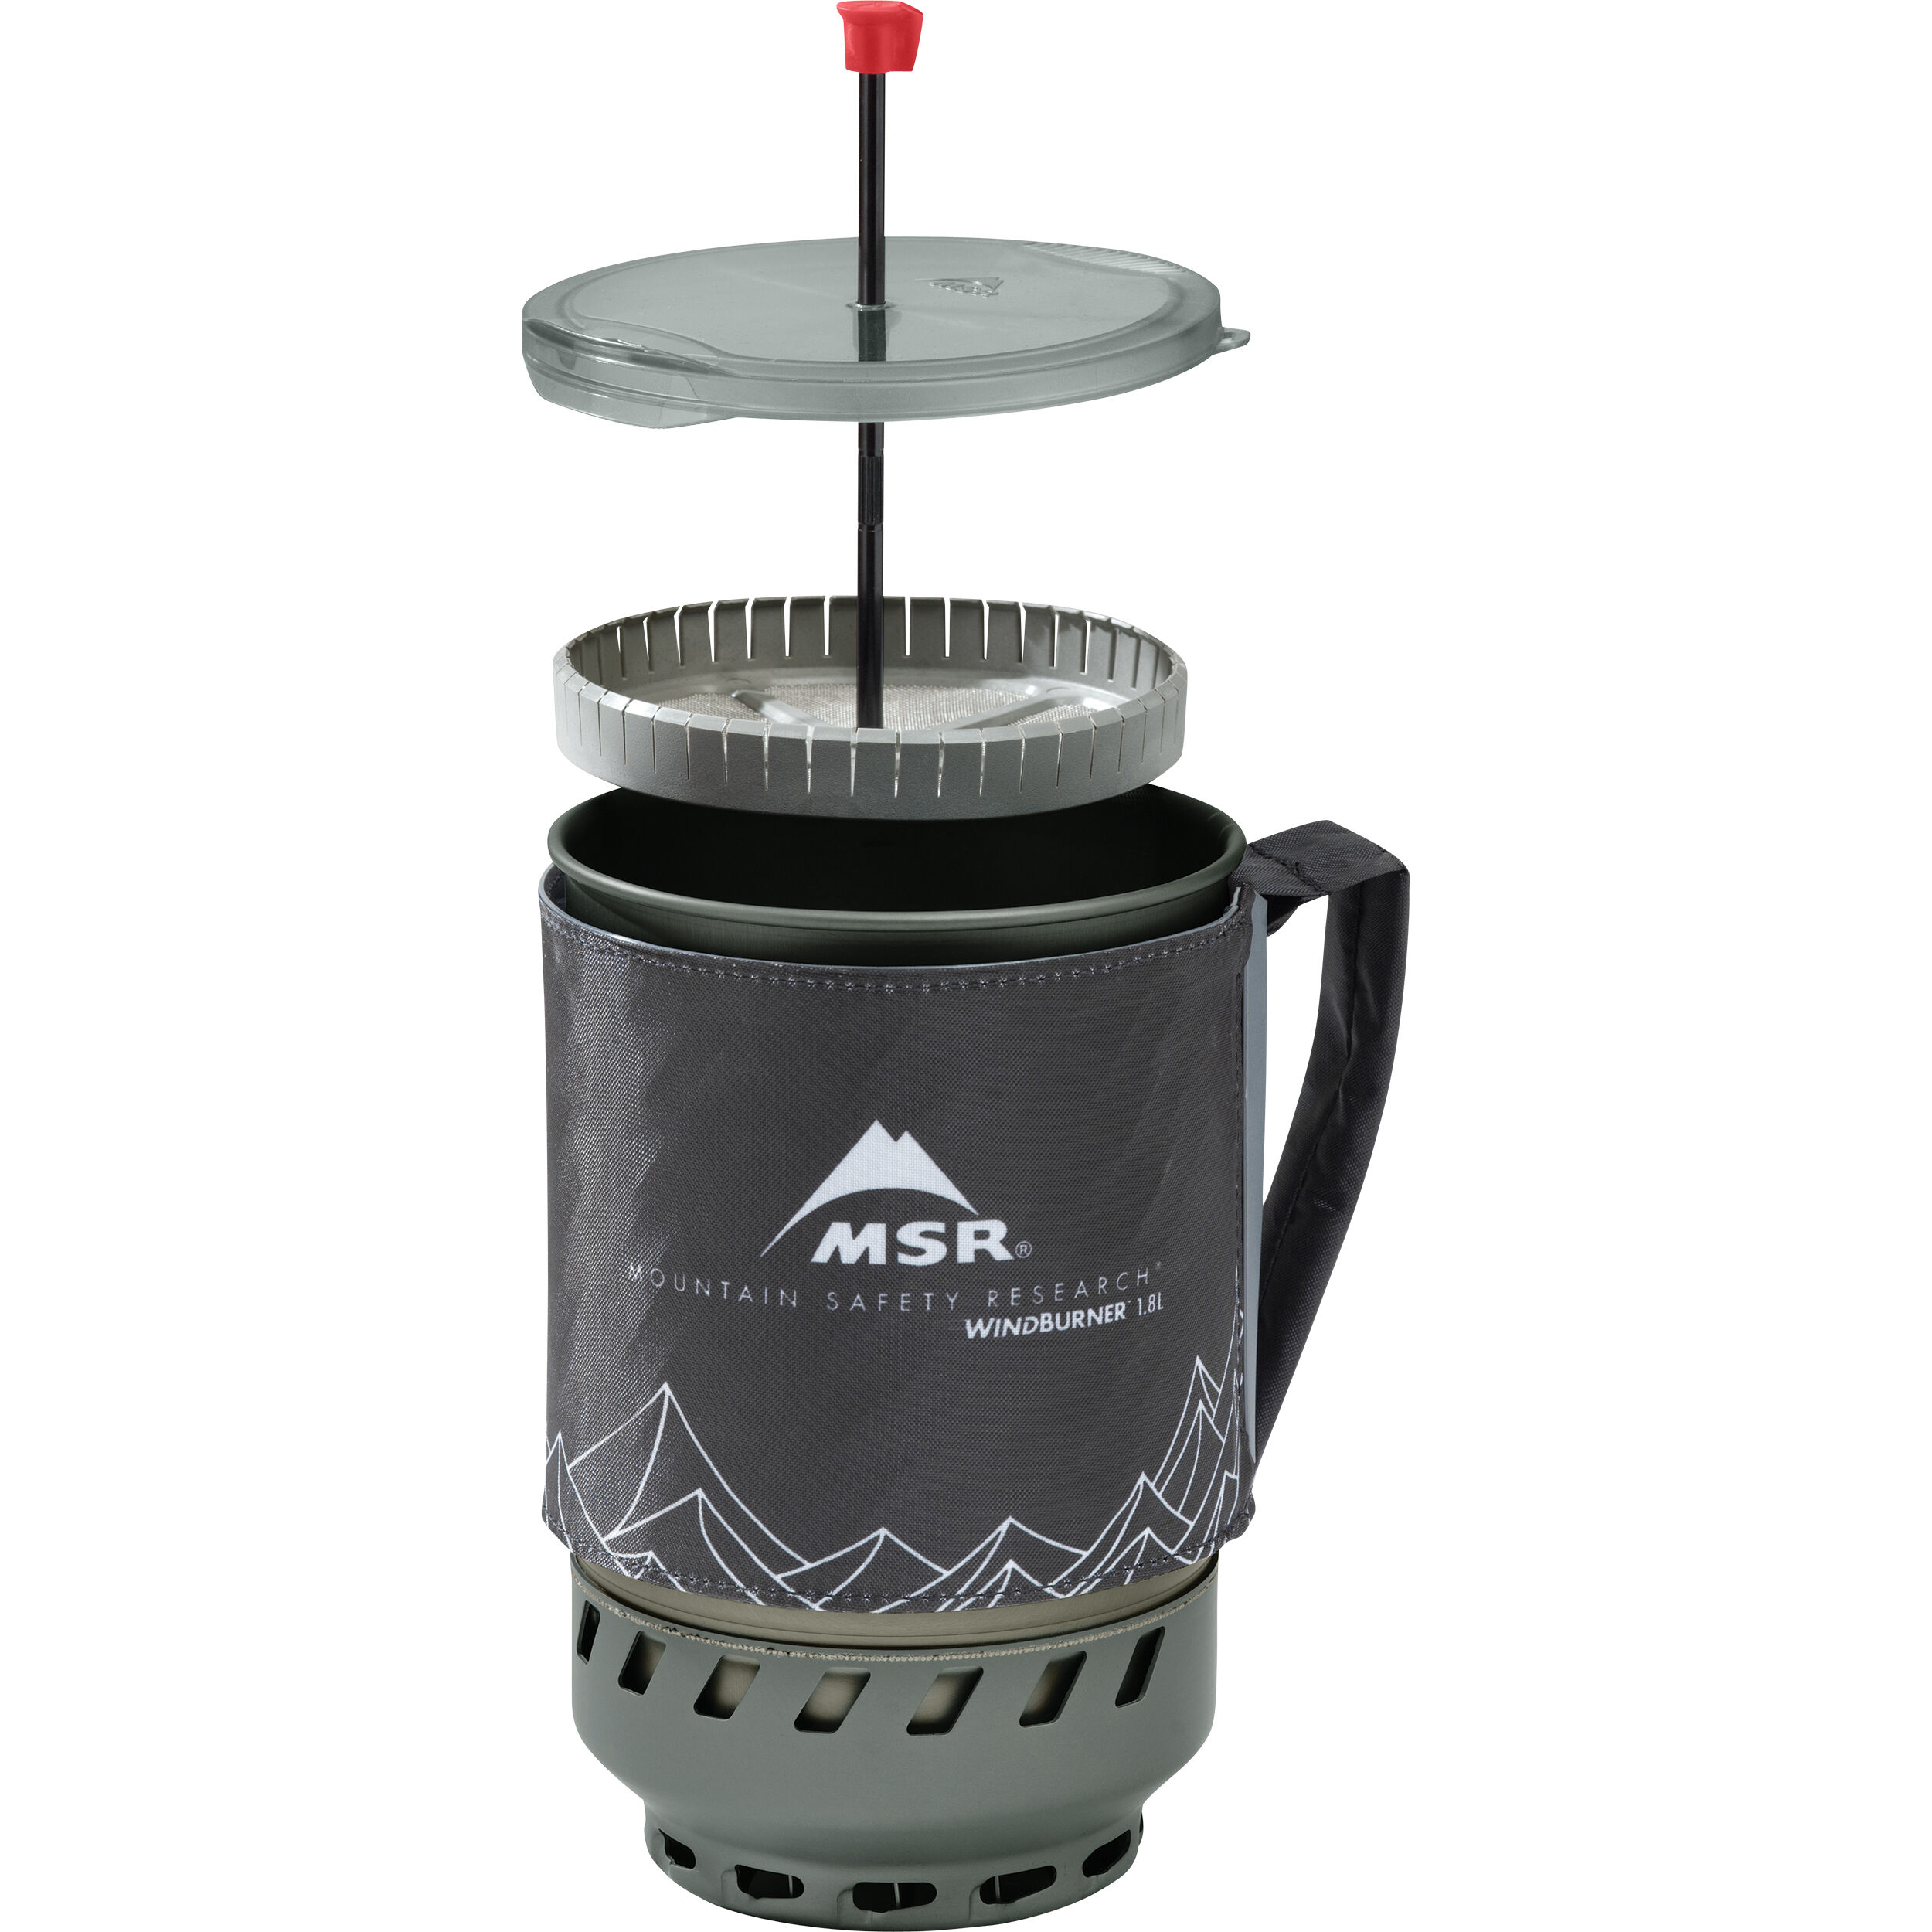 MSR CAFFÈ PRESS KIT PER windburner 1.0 LITRI Cottura Sistema Cafetière tipo P.. 